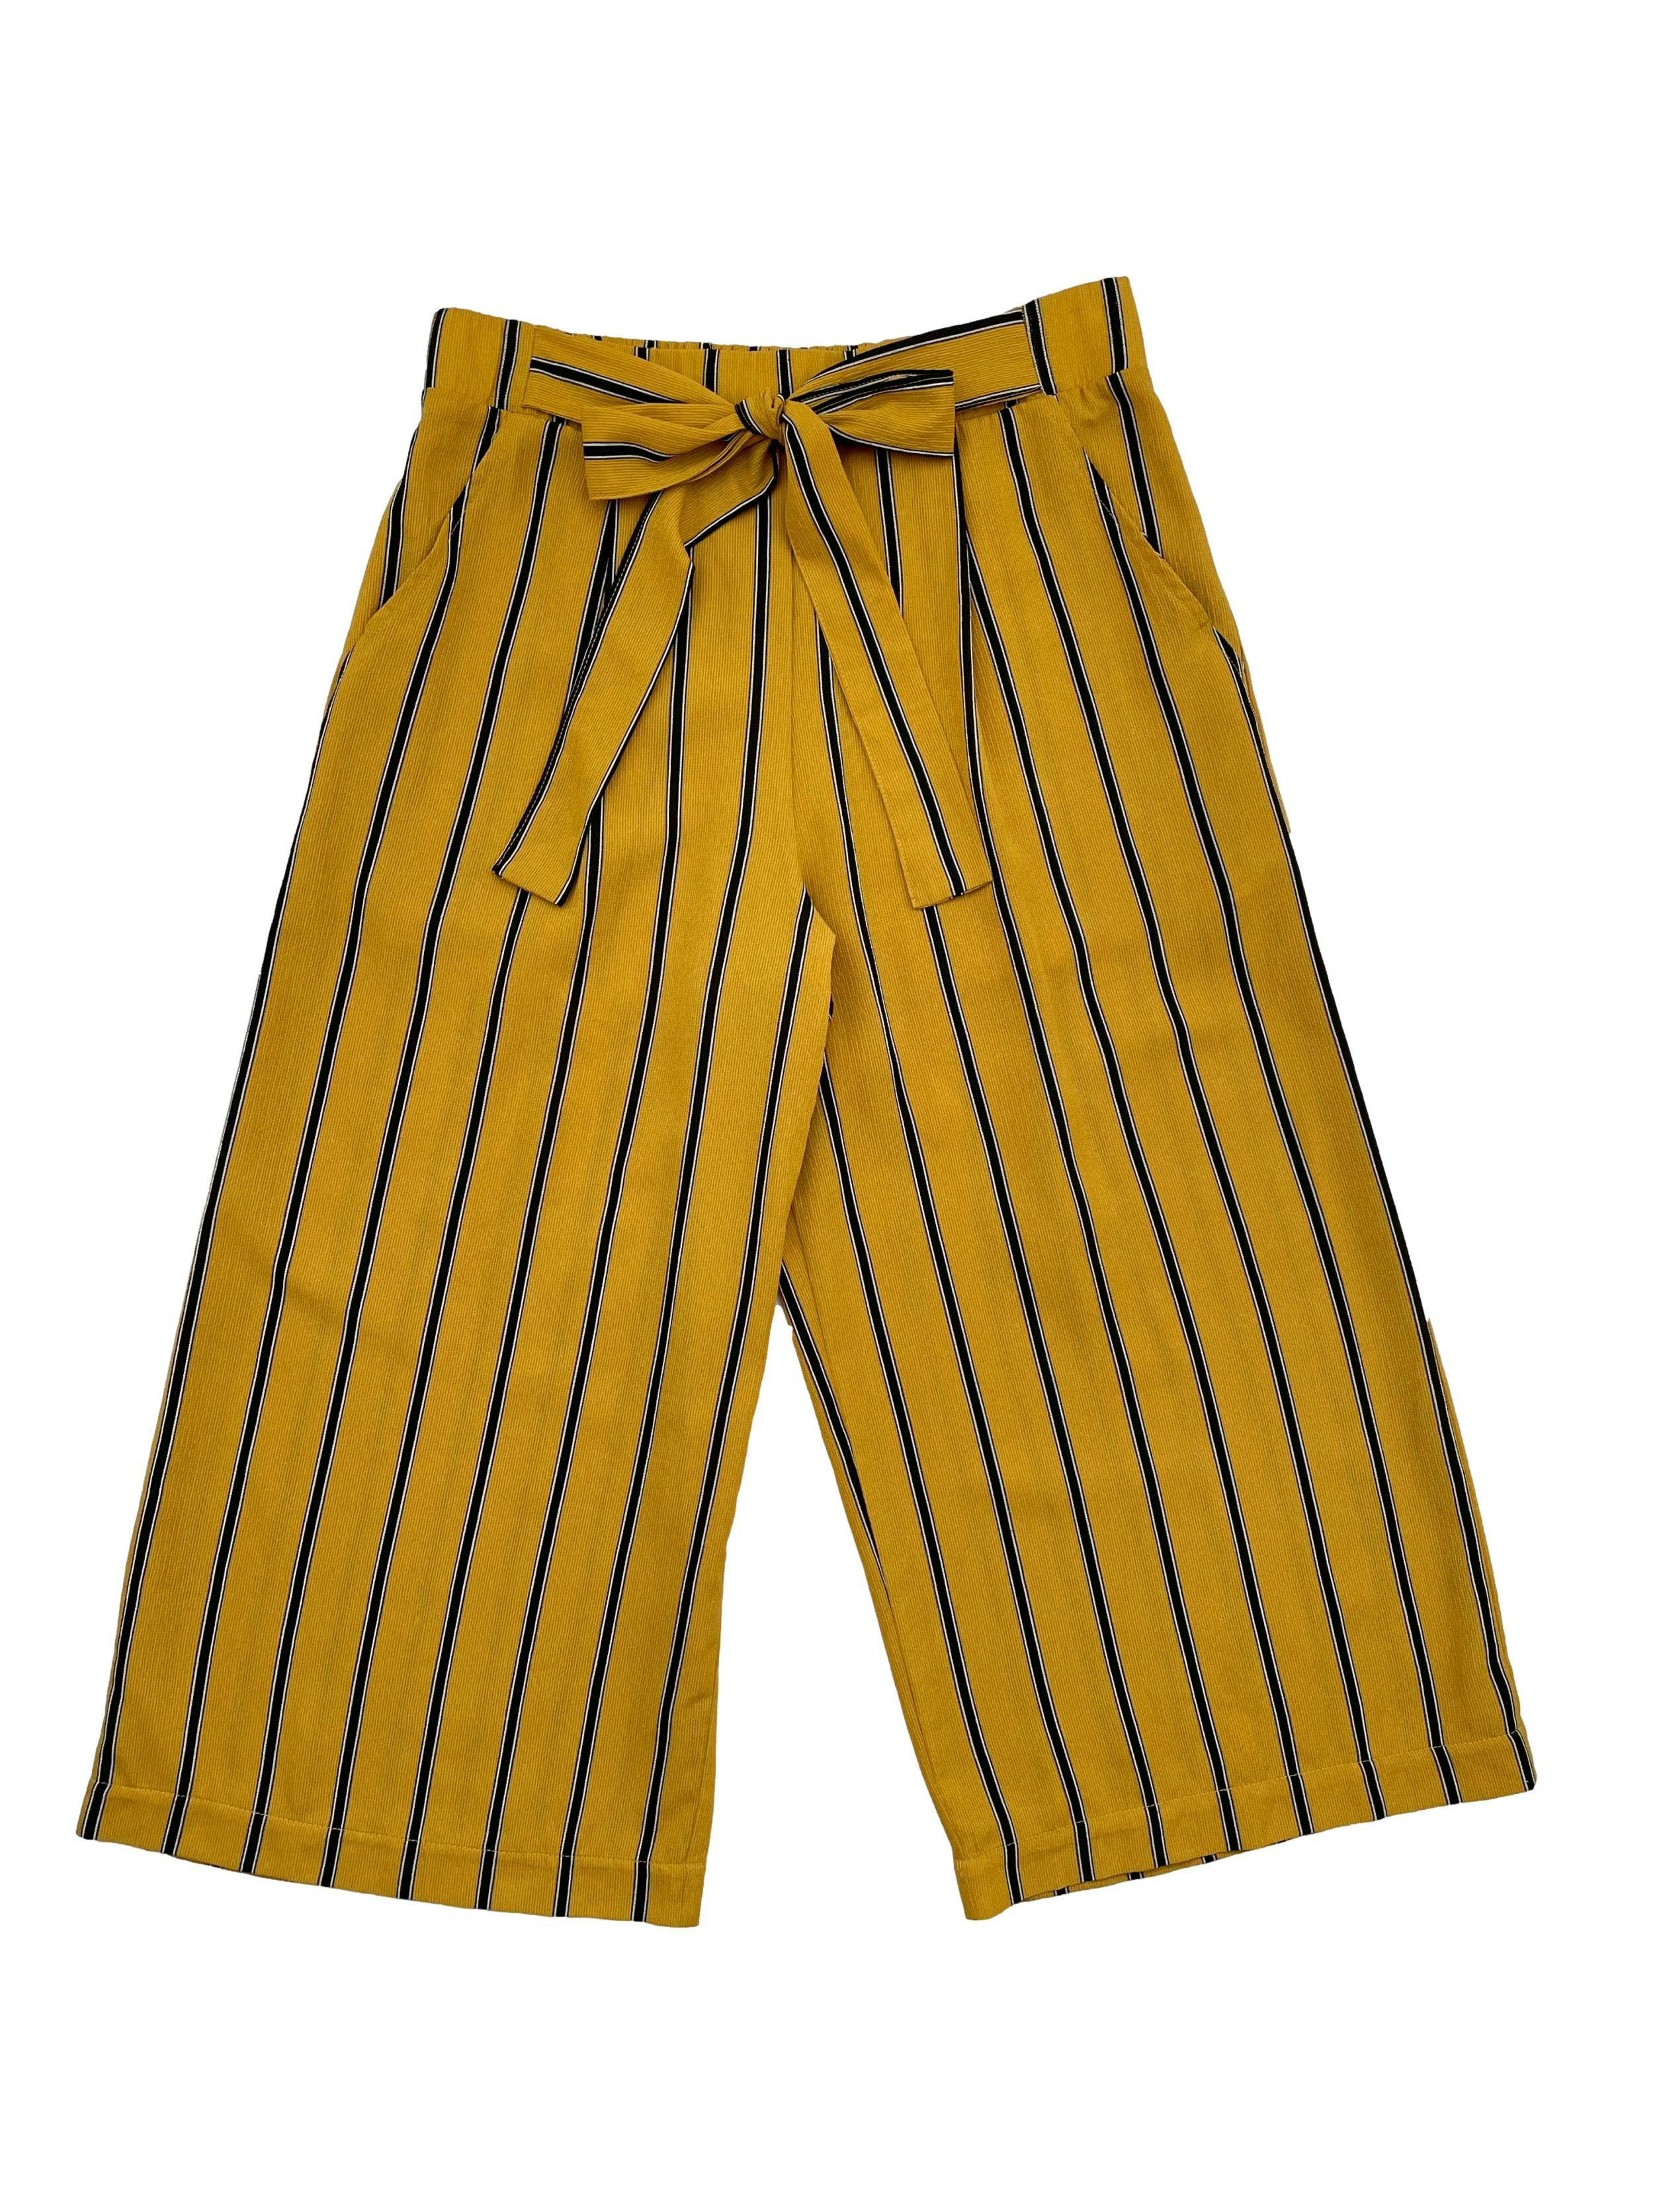 Pantalon culotte Basement de crepe mostaza y rayas negras verticales. Cintura 72cm, Largo 78cms. 